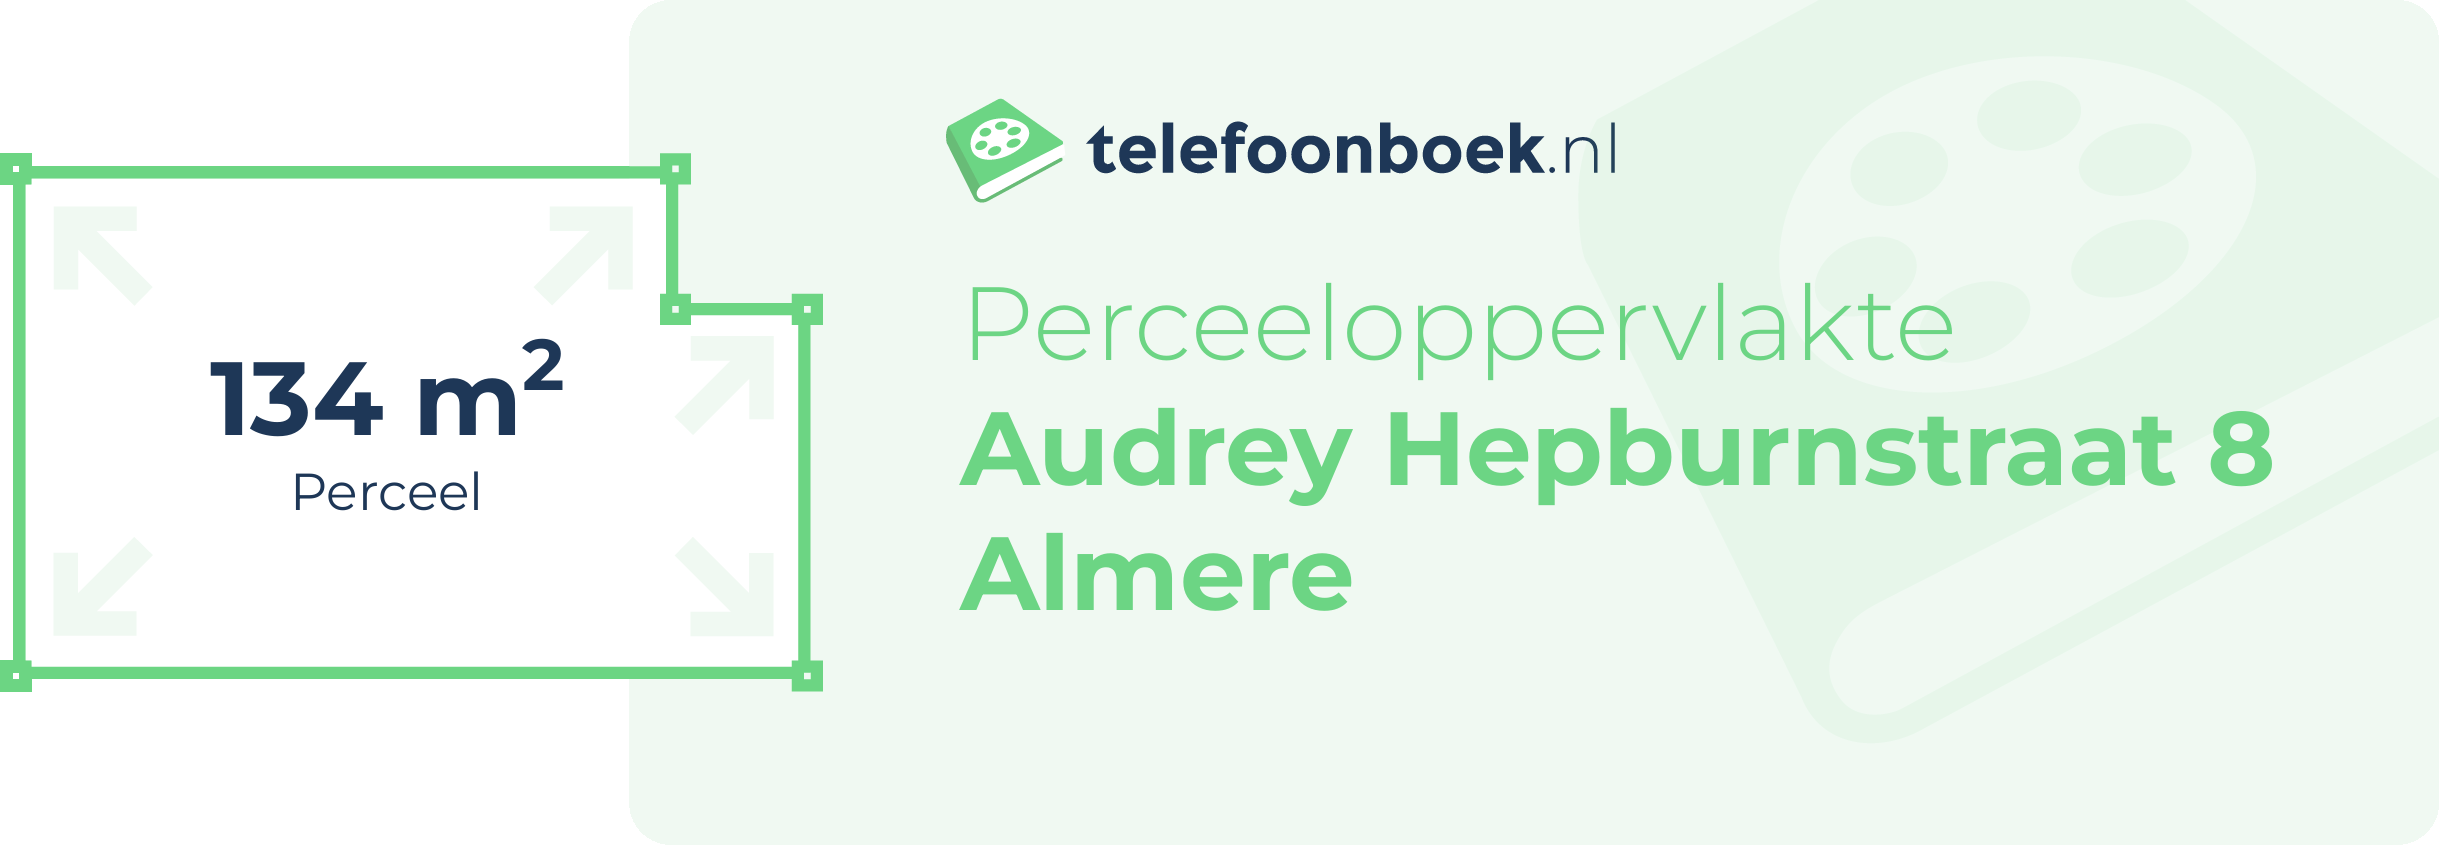 Perceeloppervlakte Audrey Hepburnstraat 8 Almere